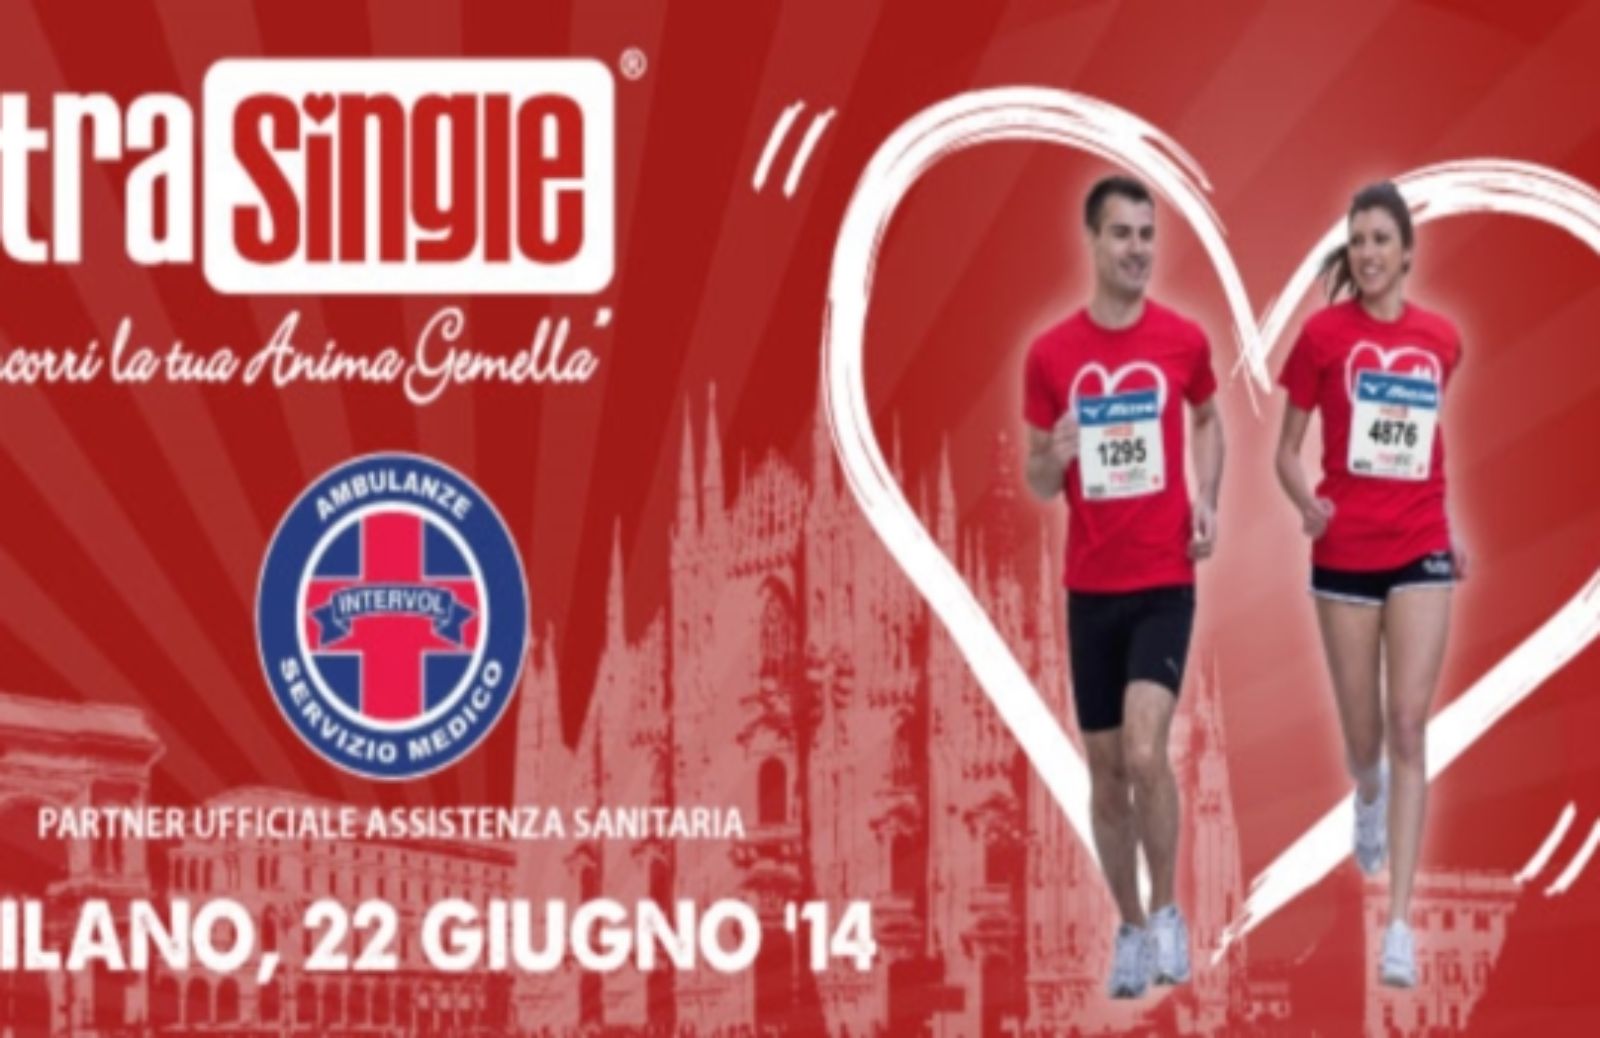 Strasingle 2014: a Milano la maratona per trovare l'anima gemella